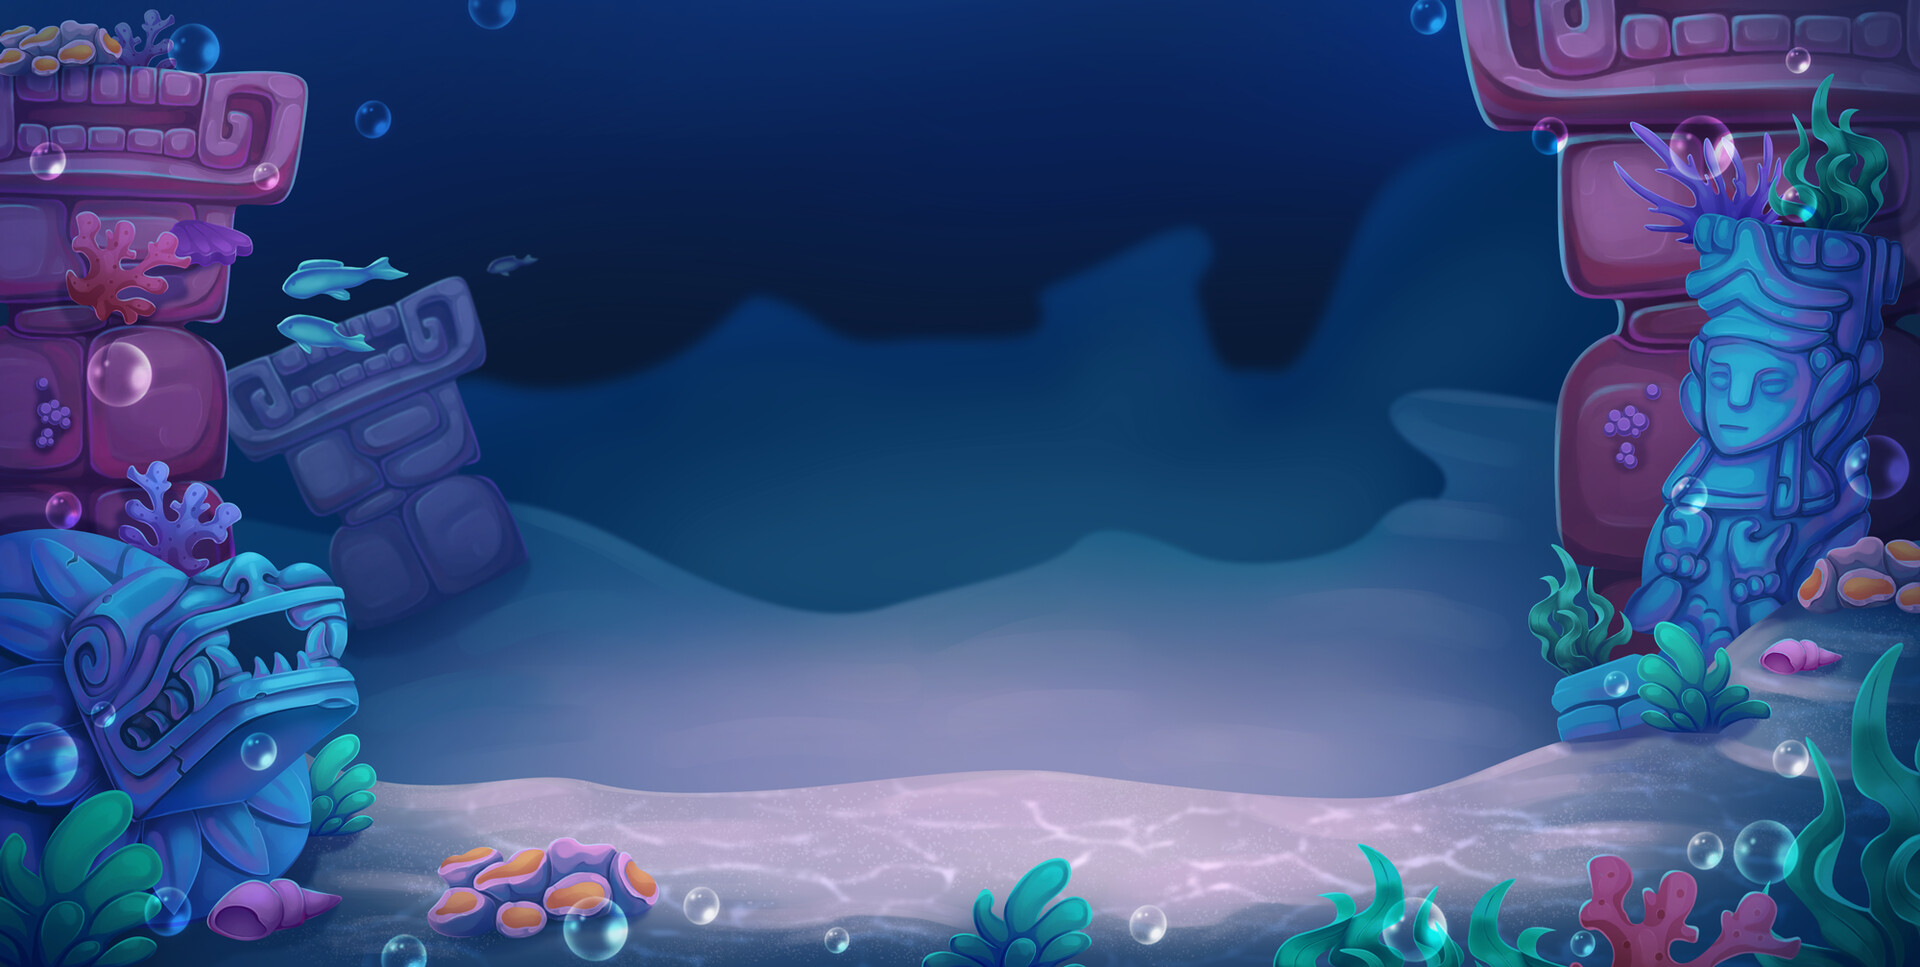 Phong cảnh dưới nước là một thế giới kỳ diệu đầy màu sắc và độc đáo. Những hình ảnh tuyệt đẹp của sinh vật biển, rong rêu và đá san hô dưới đáy biển sẽ làm bạn say đắm trong không khí yên tĩnh và thư giãn. Hãy khám phá vẻ đẹp hoang sơ và mãn nhãn của phong cảnh dưới nước với những hình ảnh đẹp lung linh này!